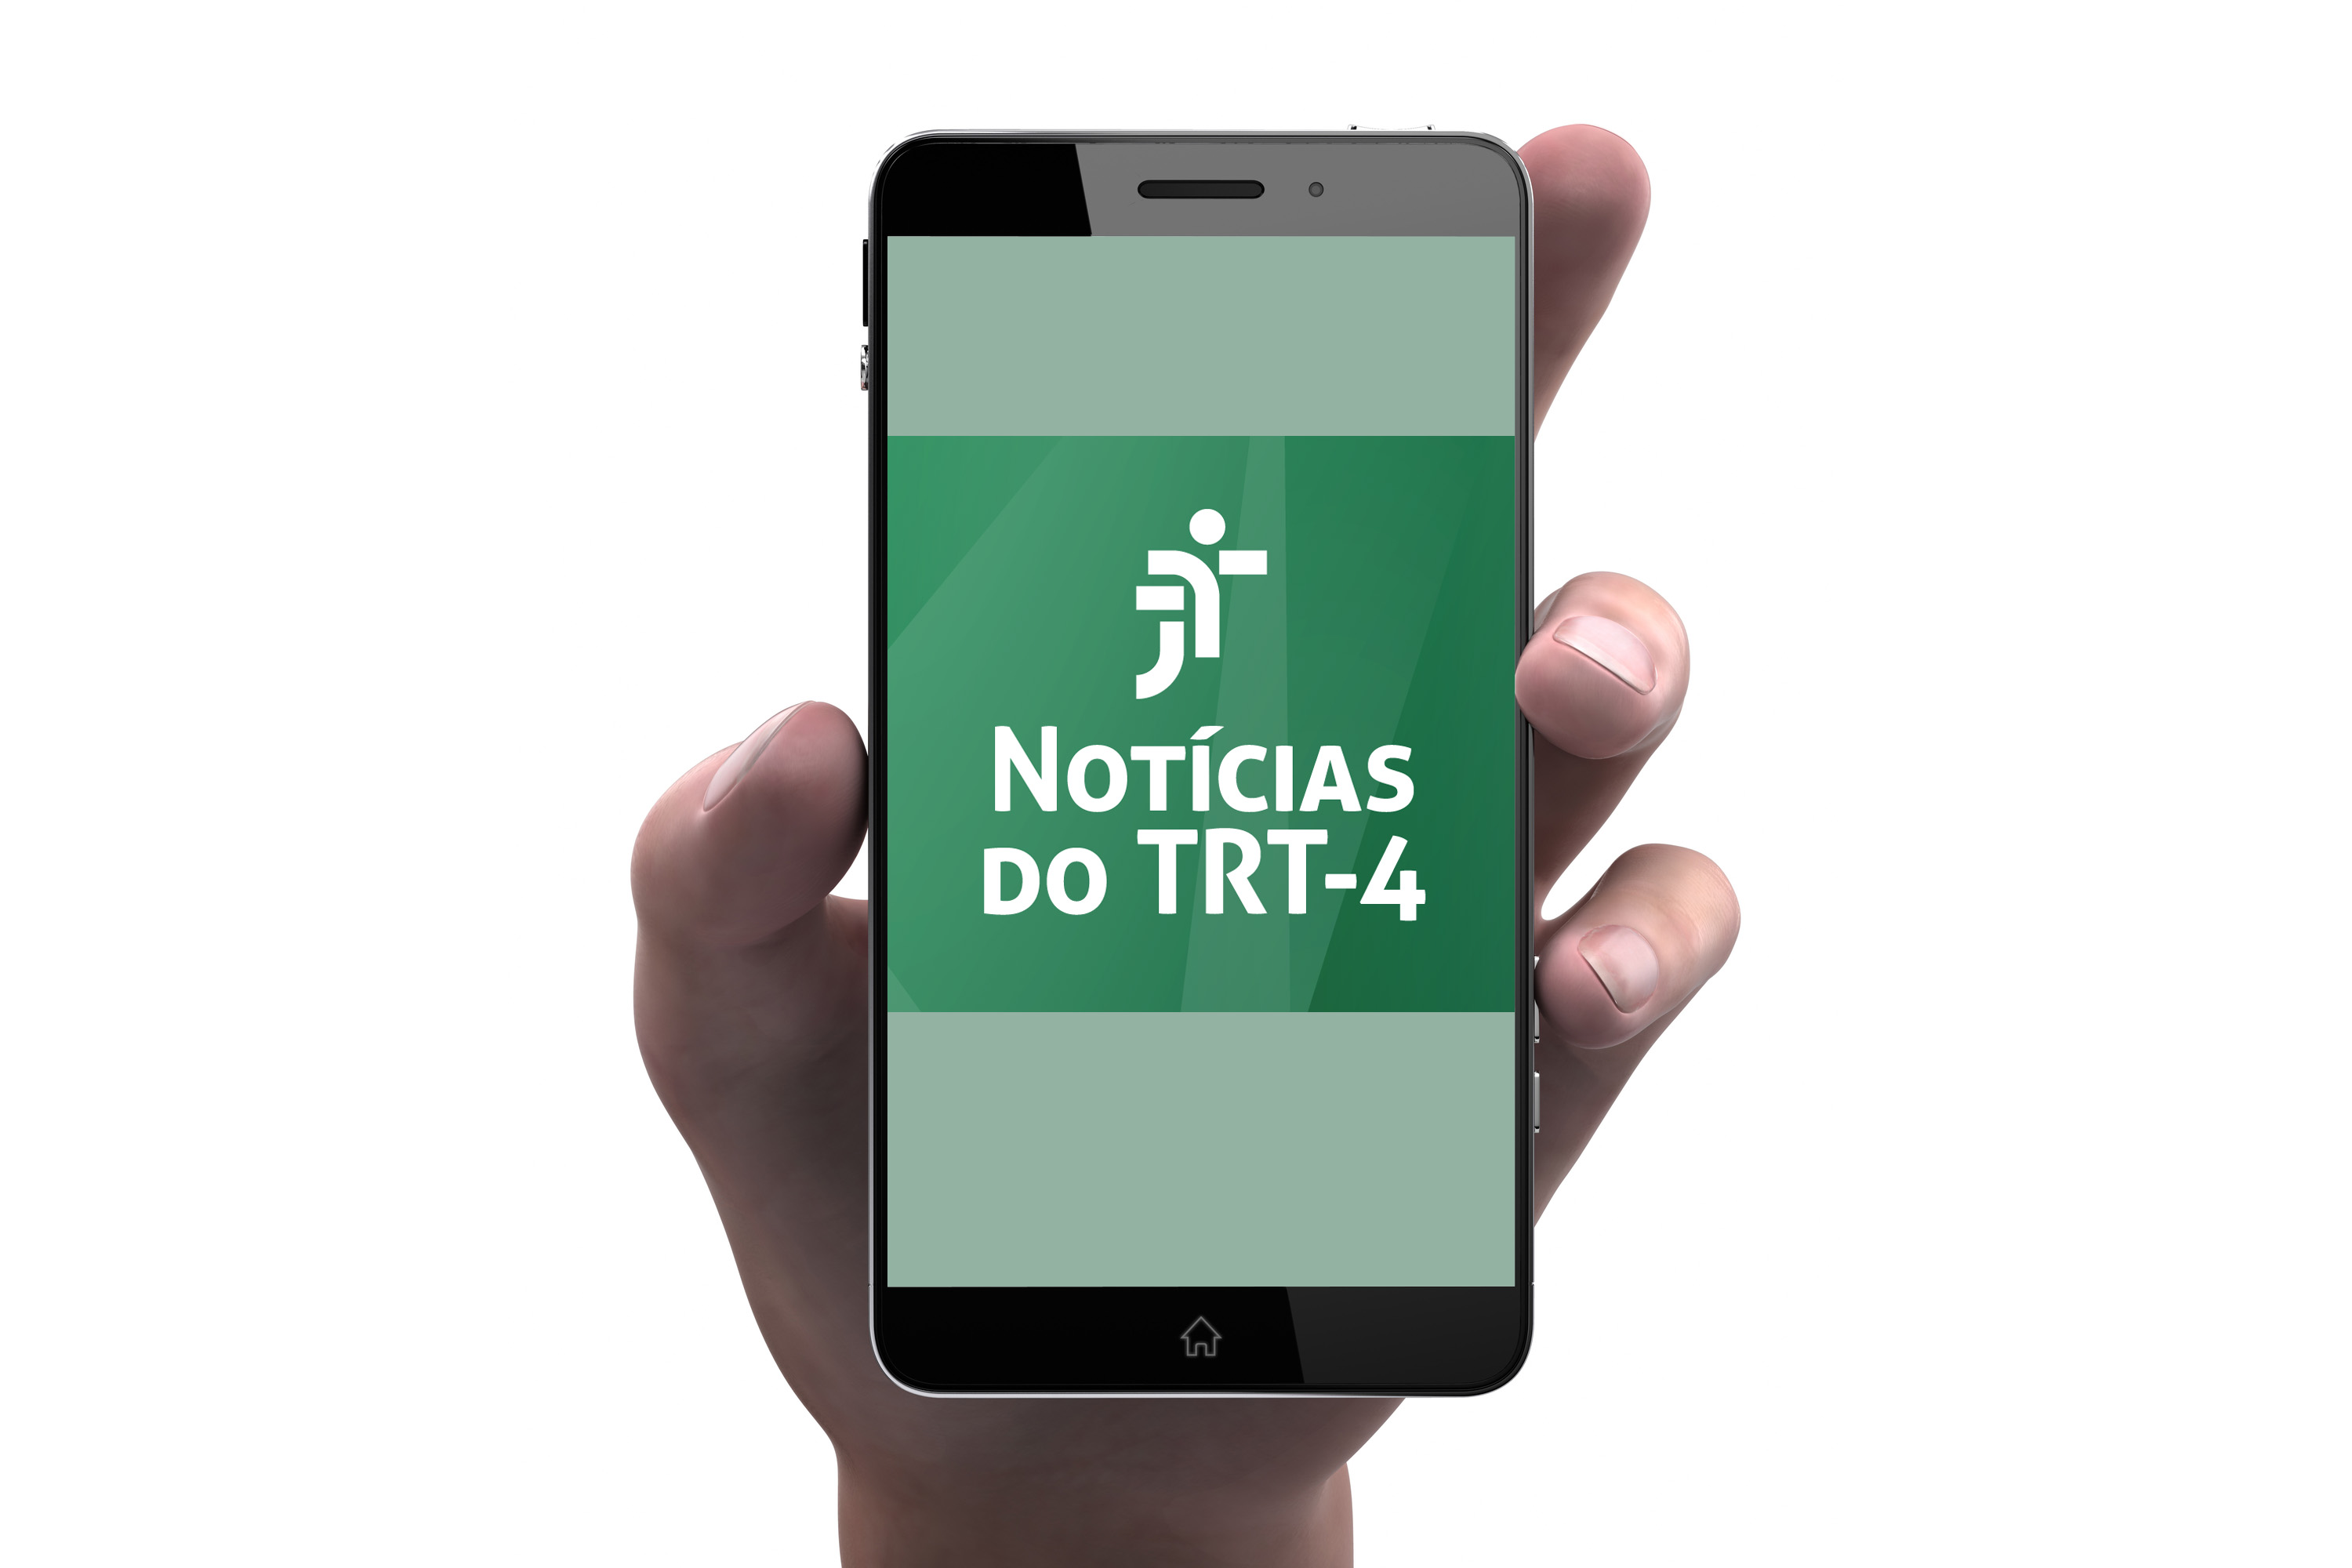 Imagem ilustrativa de uma mão segurando um celular com o logo do Notícias do TRT4 na tela.